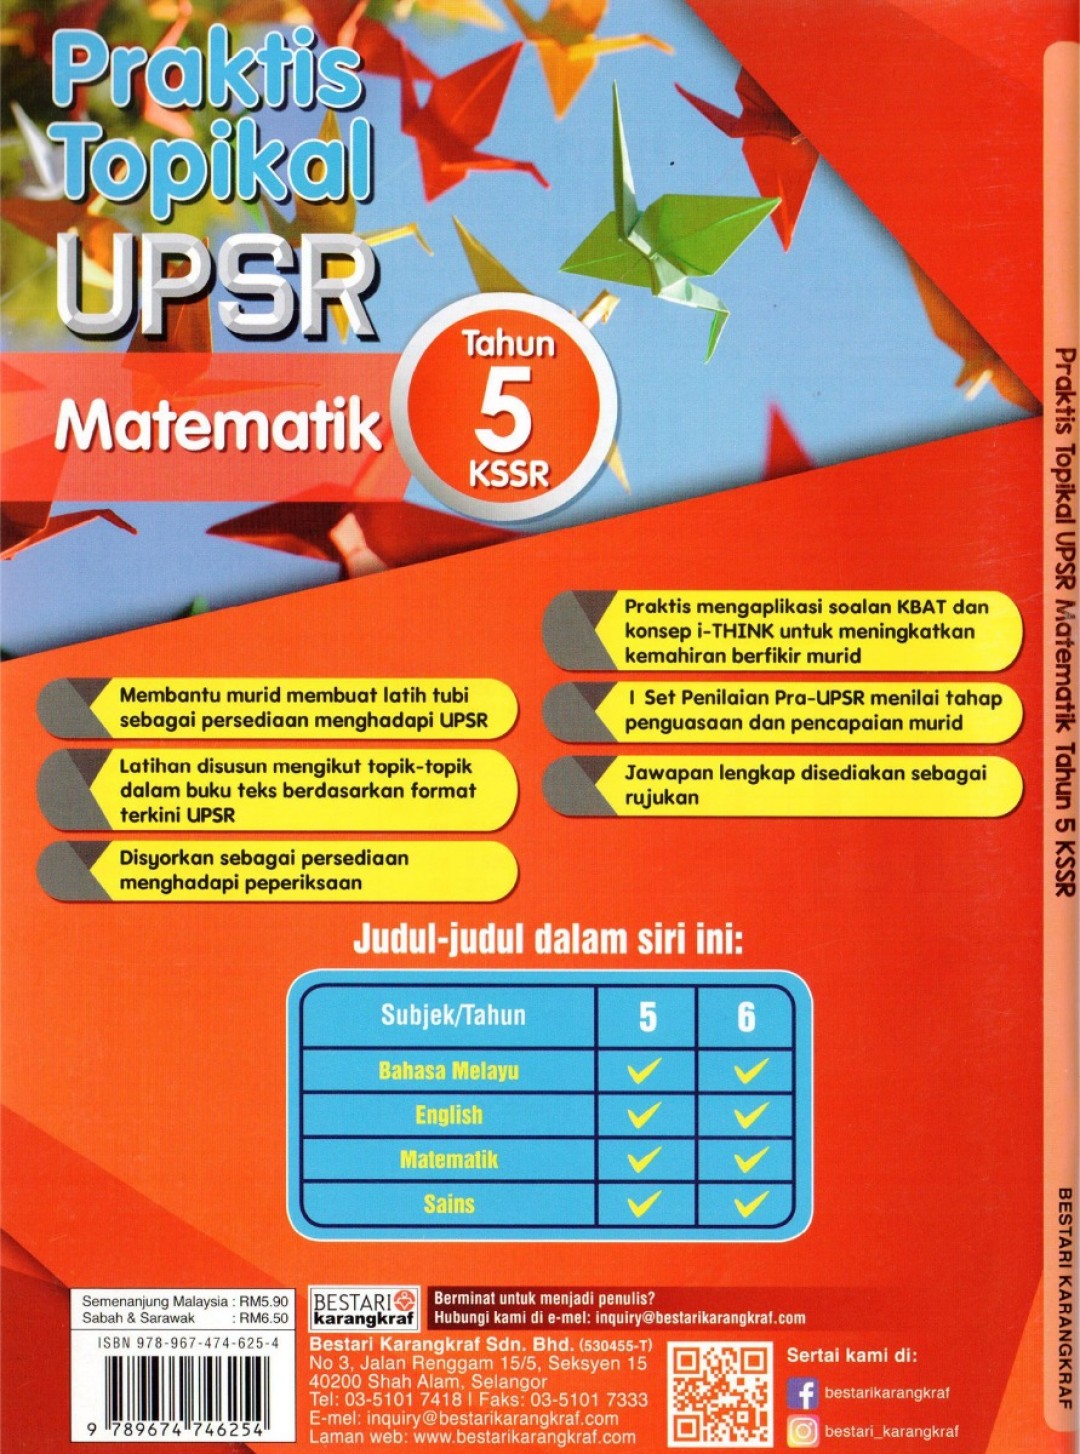 Praktis Topikal UPSR Matematik Tahun 5 (2020)